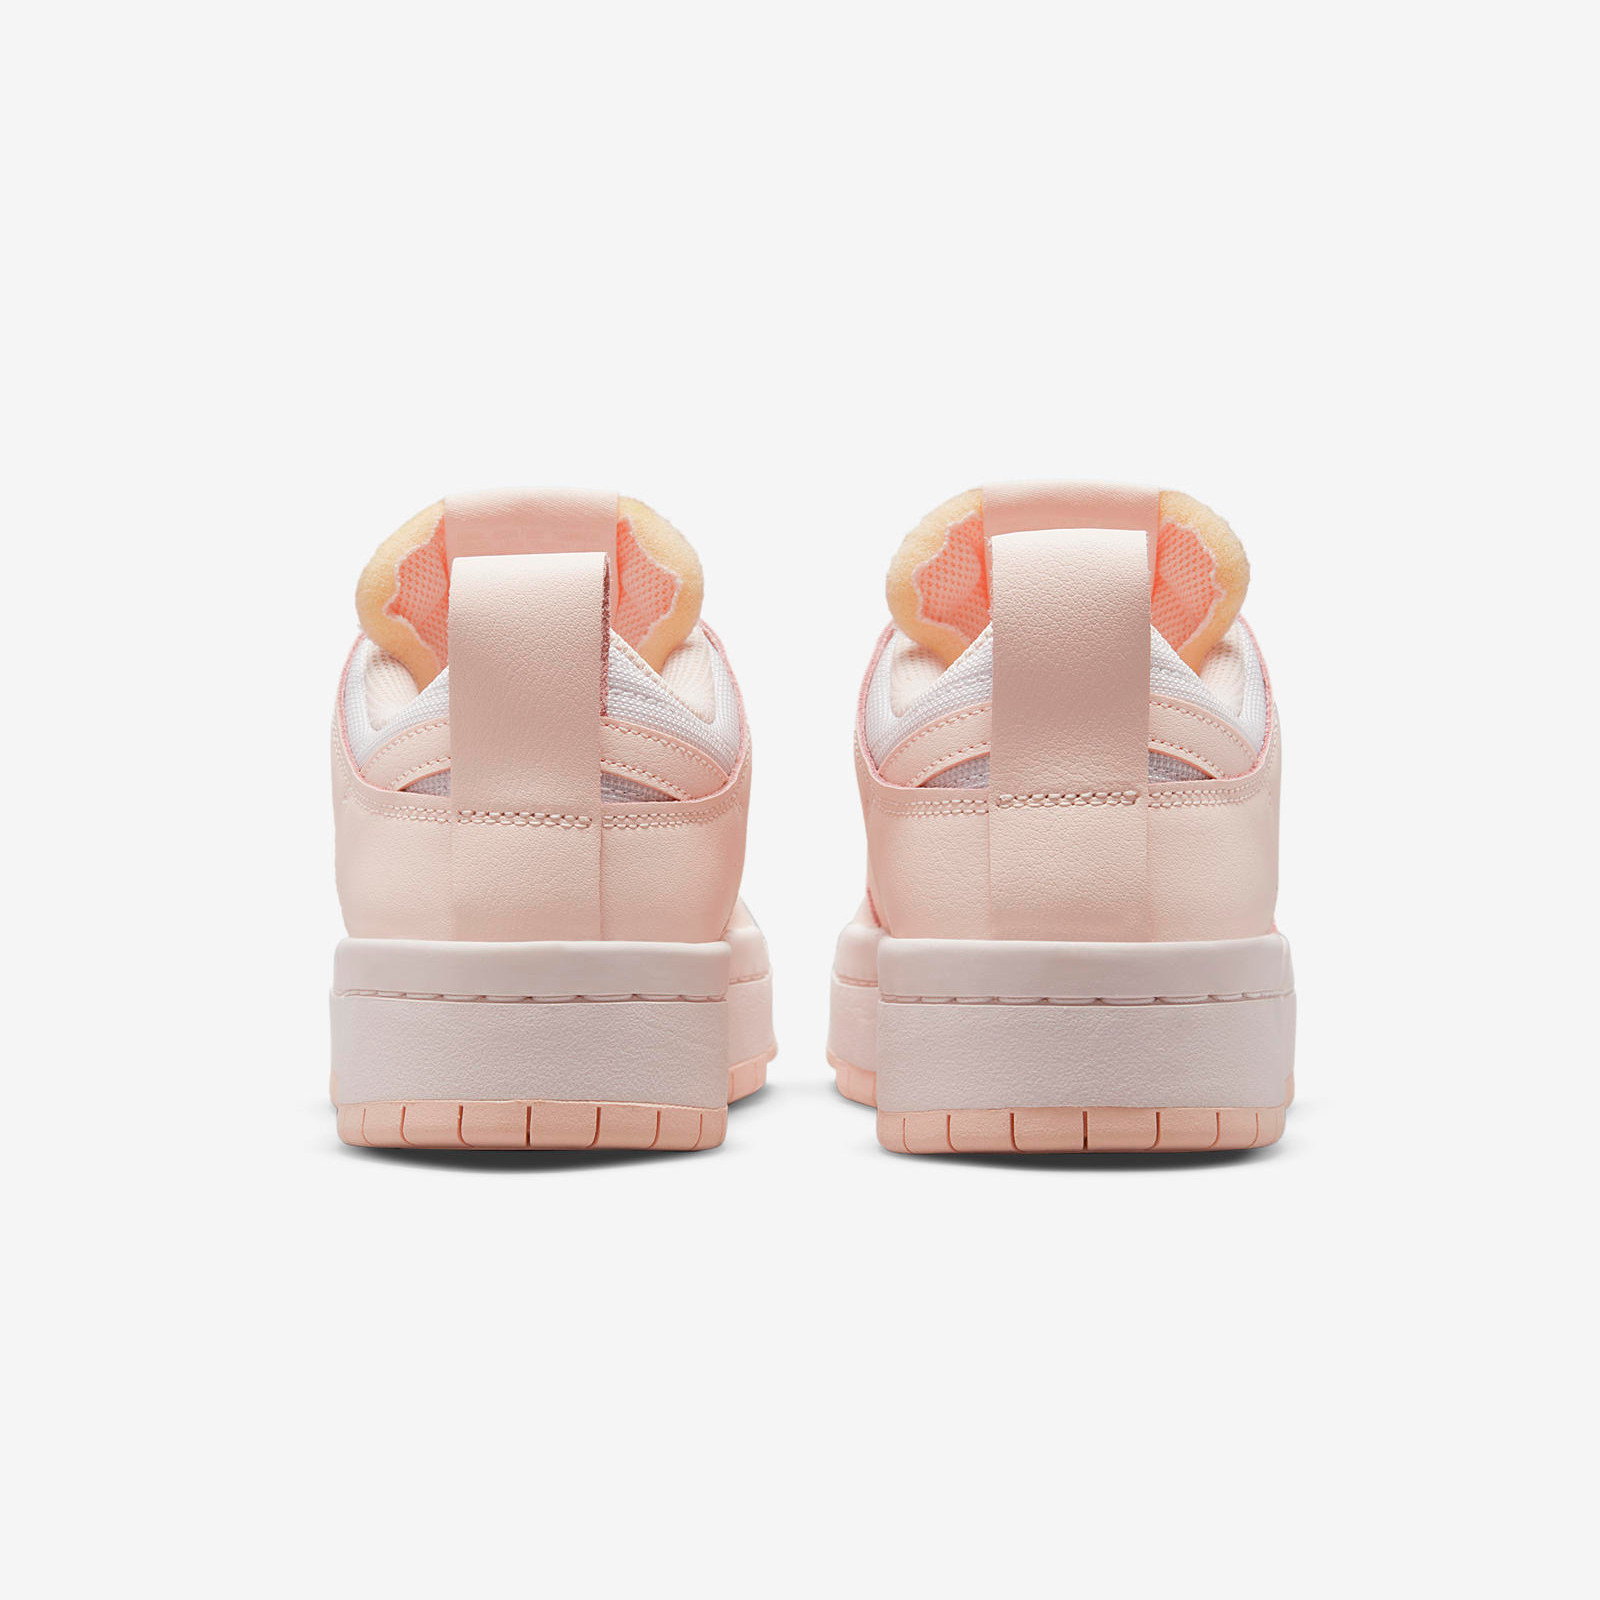 Nike Dunk Low
Disrupt Soft Pink